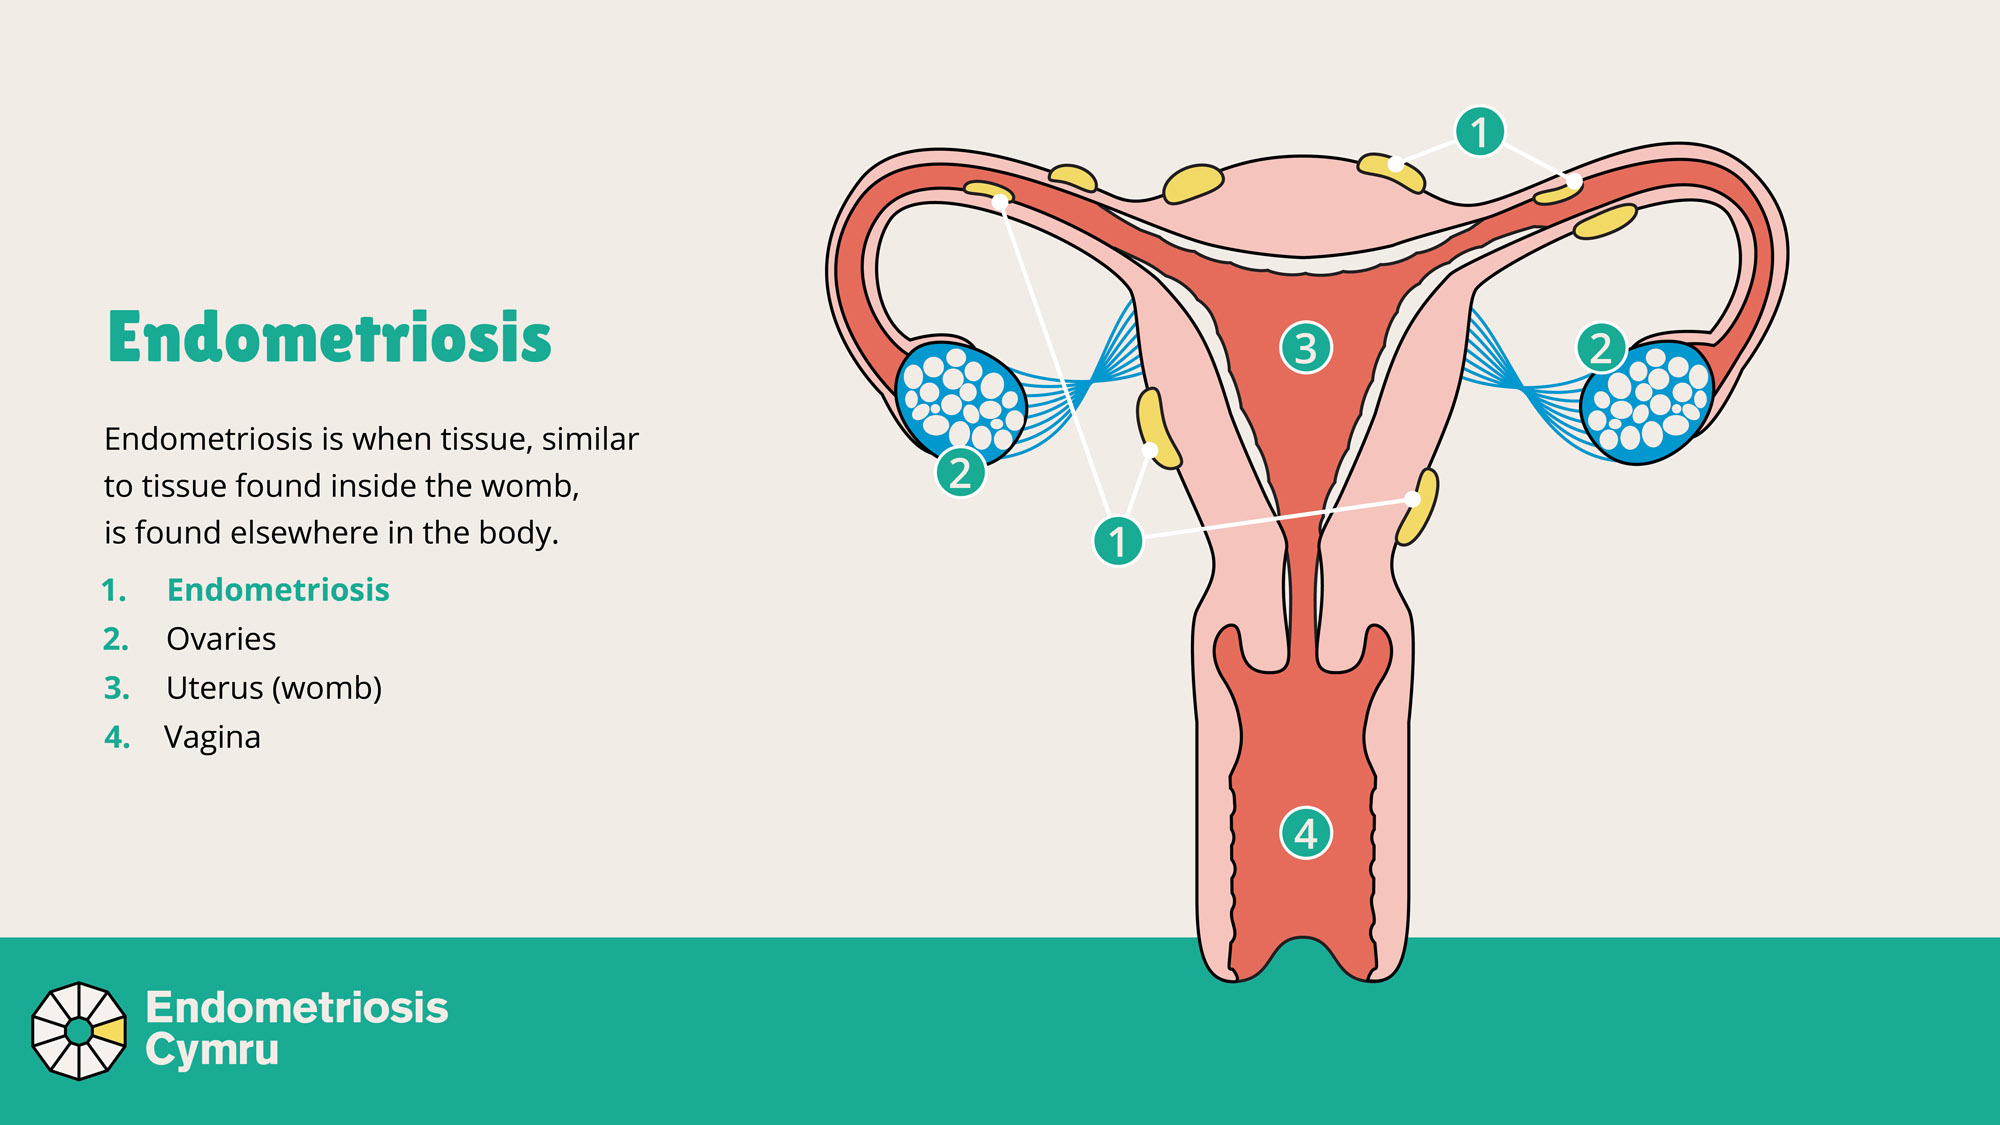 Een diagram van de vrouwelijke voortplantingsorganen met plekken van endometrioseweefsel buiten de baarmoeder